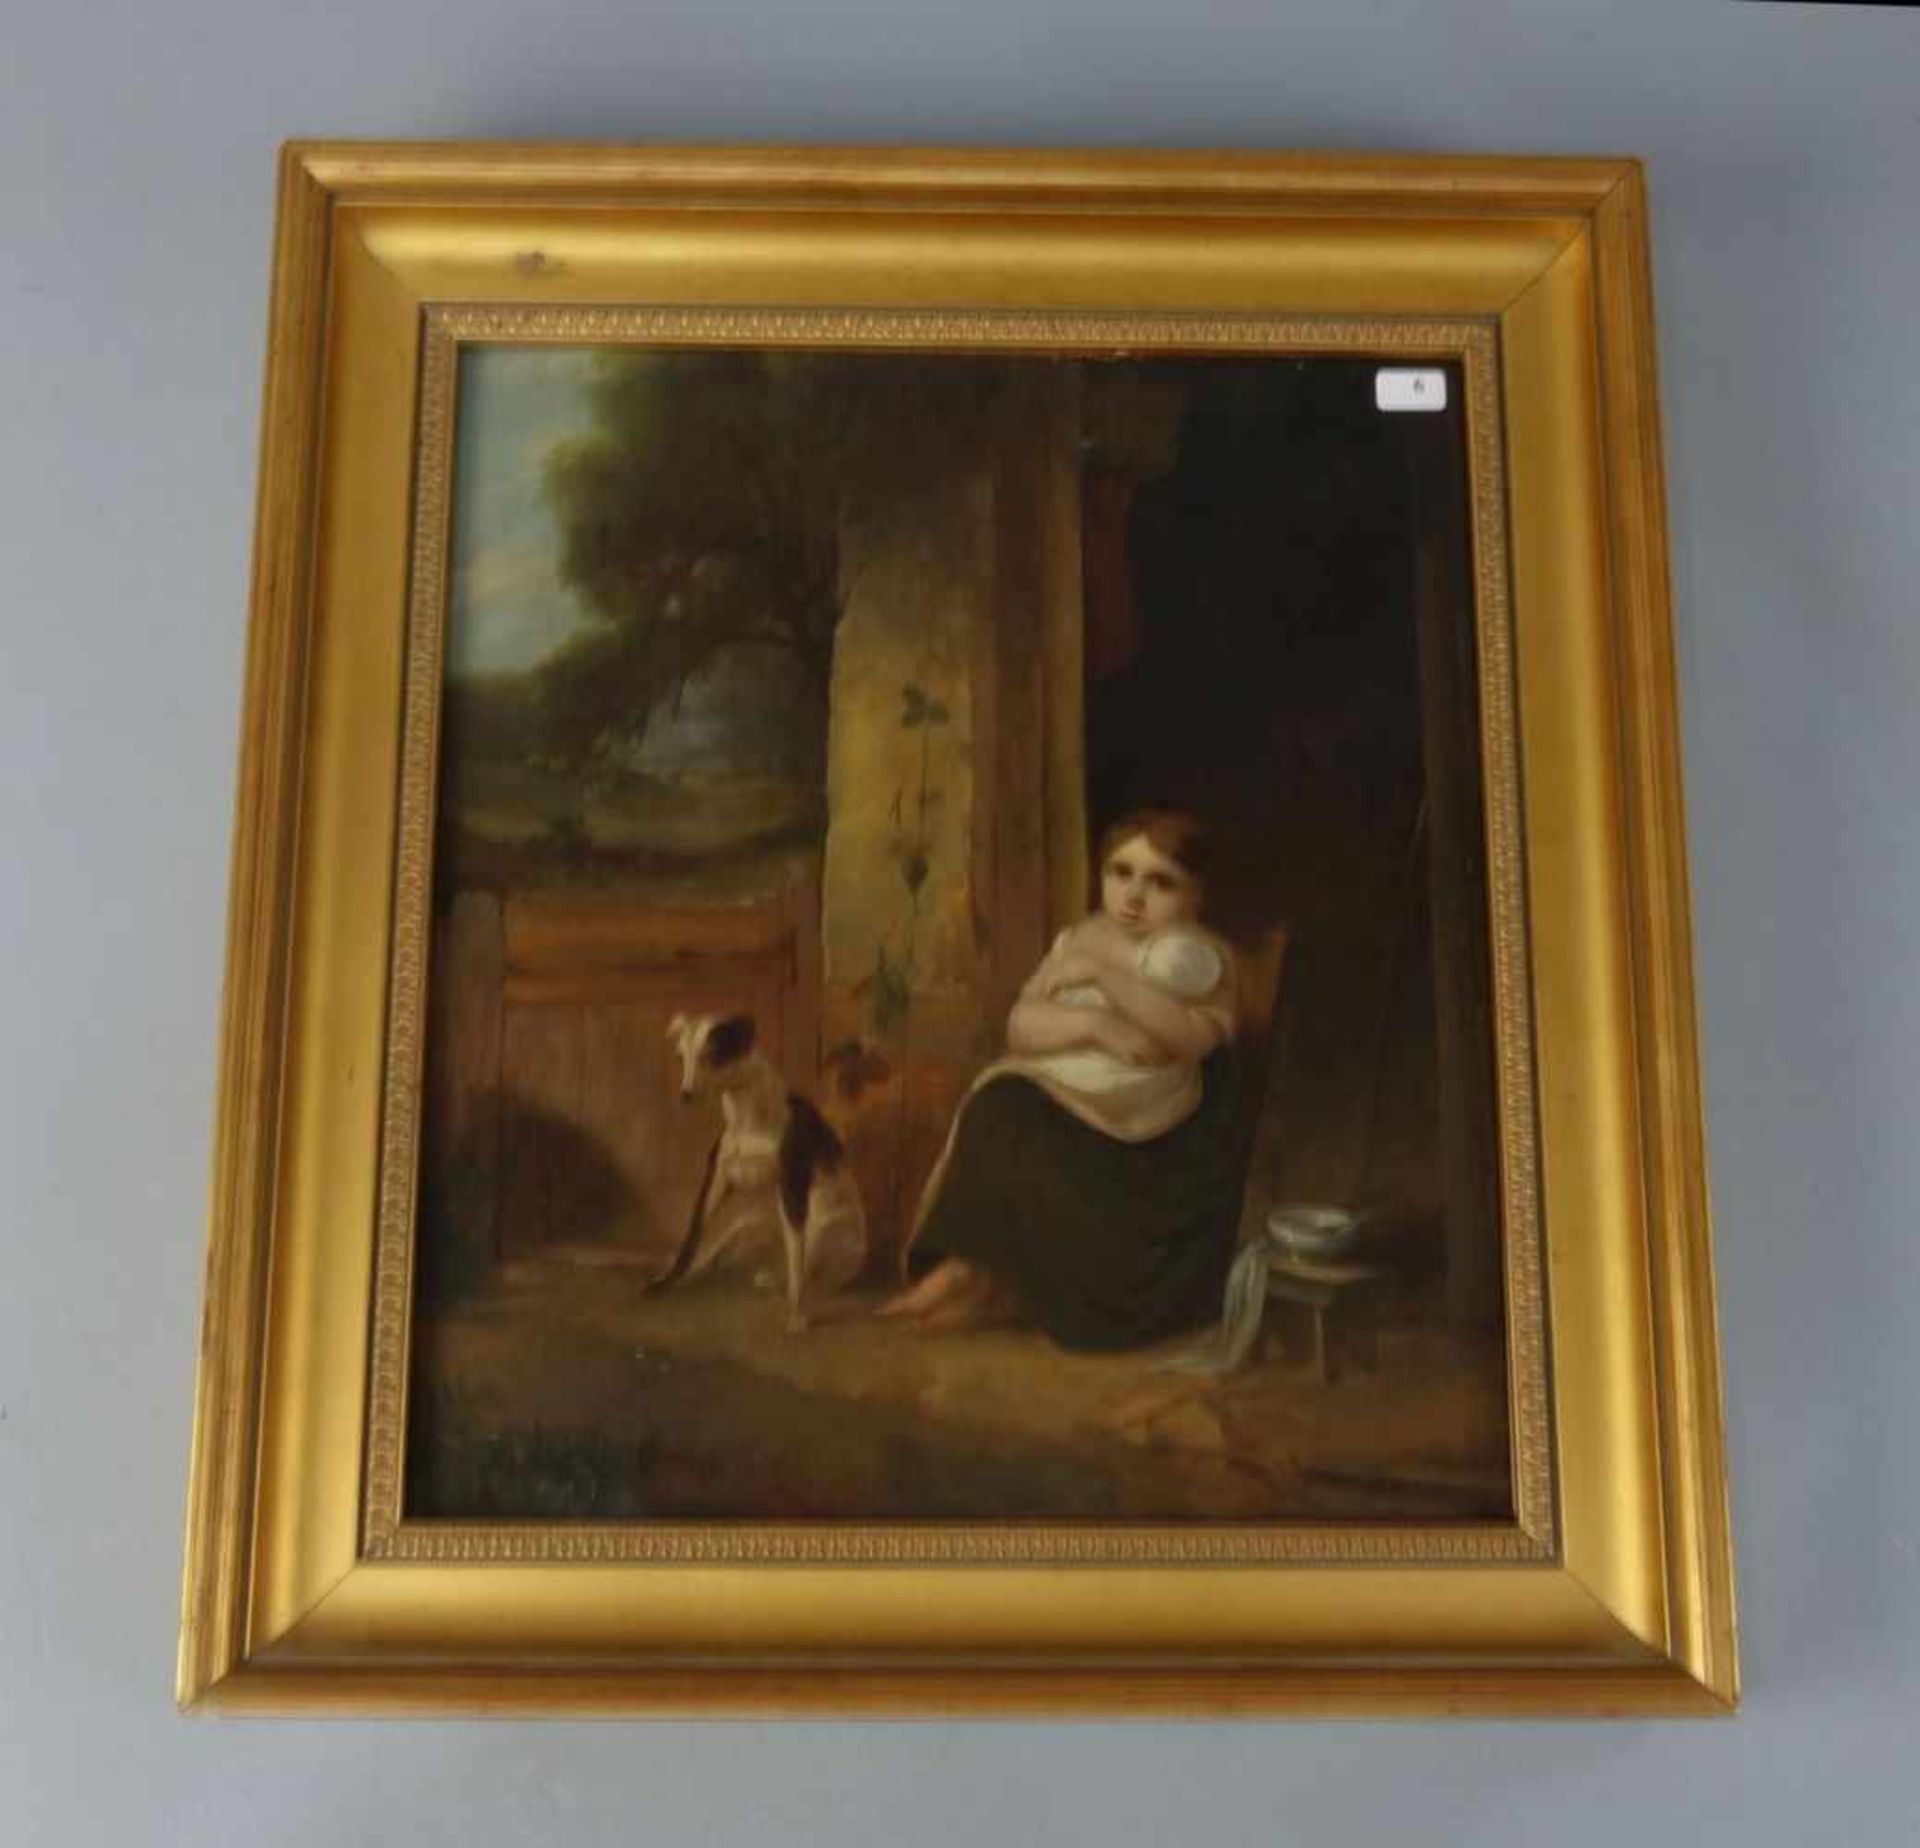 RHODES, JOHN NICHOLAS (1809-1842, englischer Landschafts- und Tiermaler aus Leeds), Gemälde /